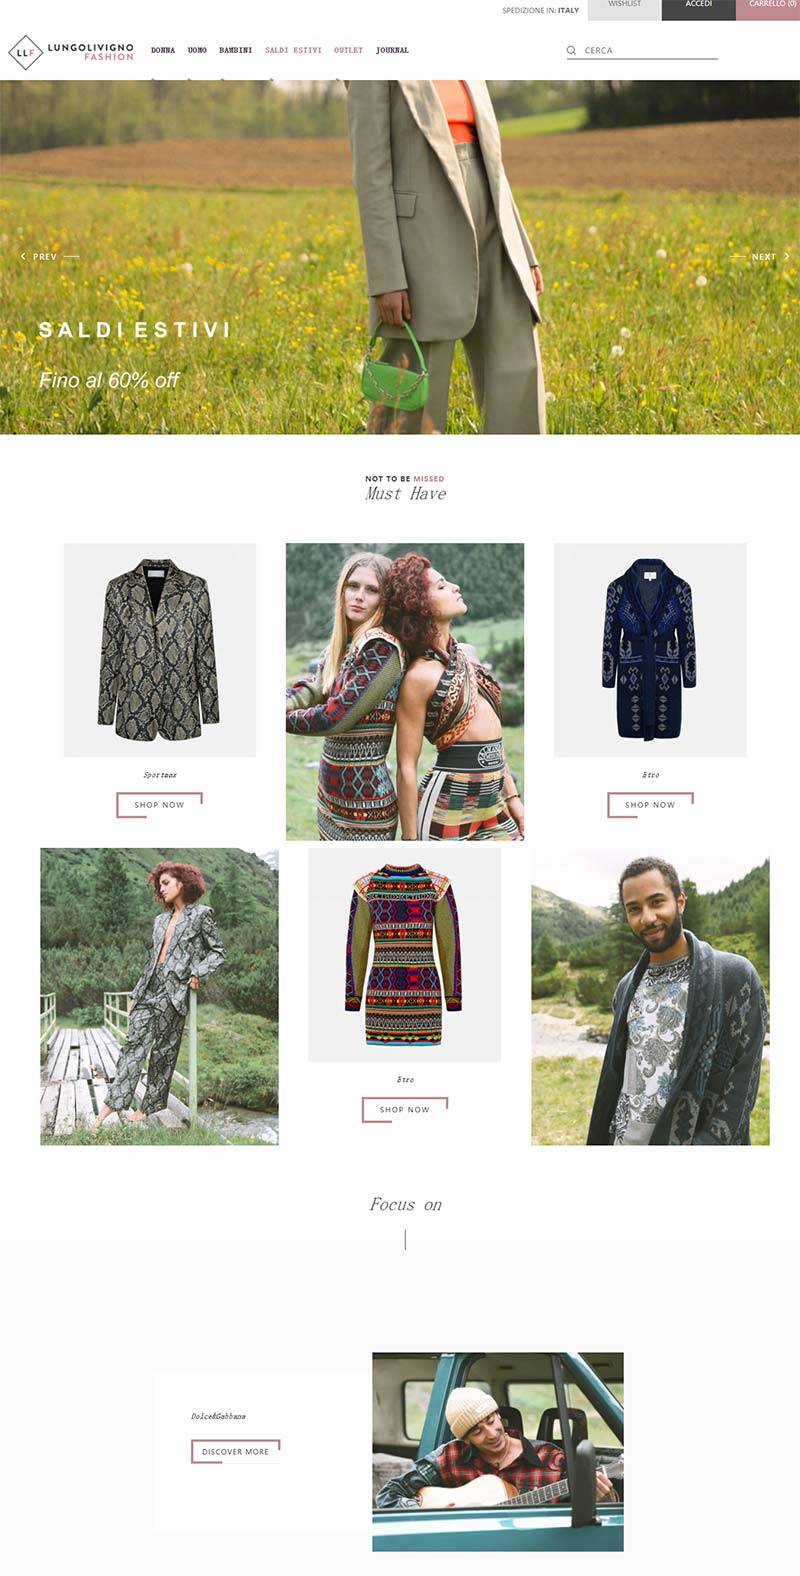 Lungolivigno Fashion 意大利高端时装品牌购物网站